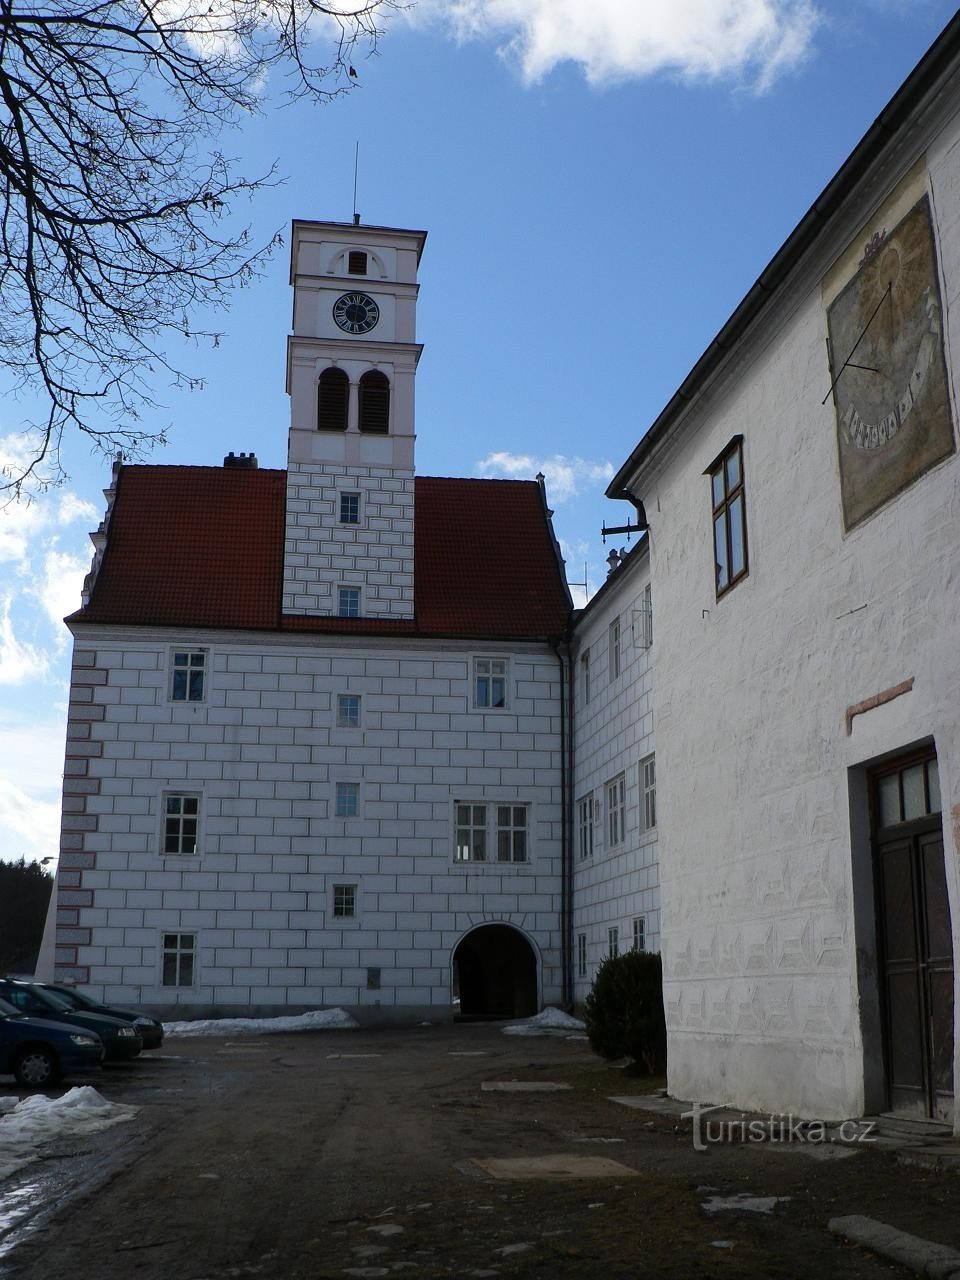 Жиховицкий замок, здание с башней